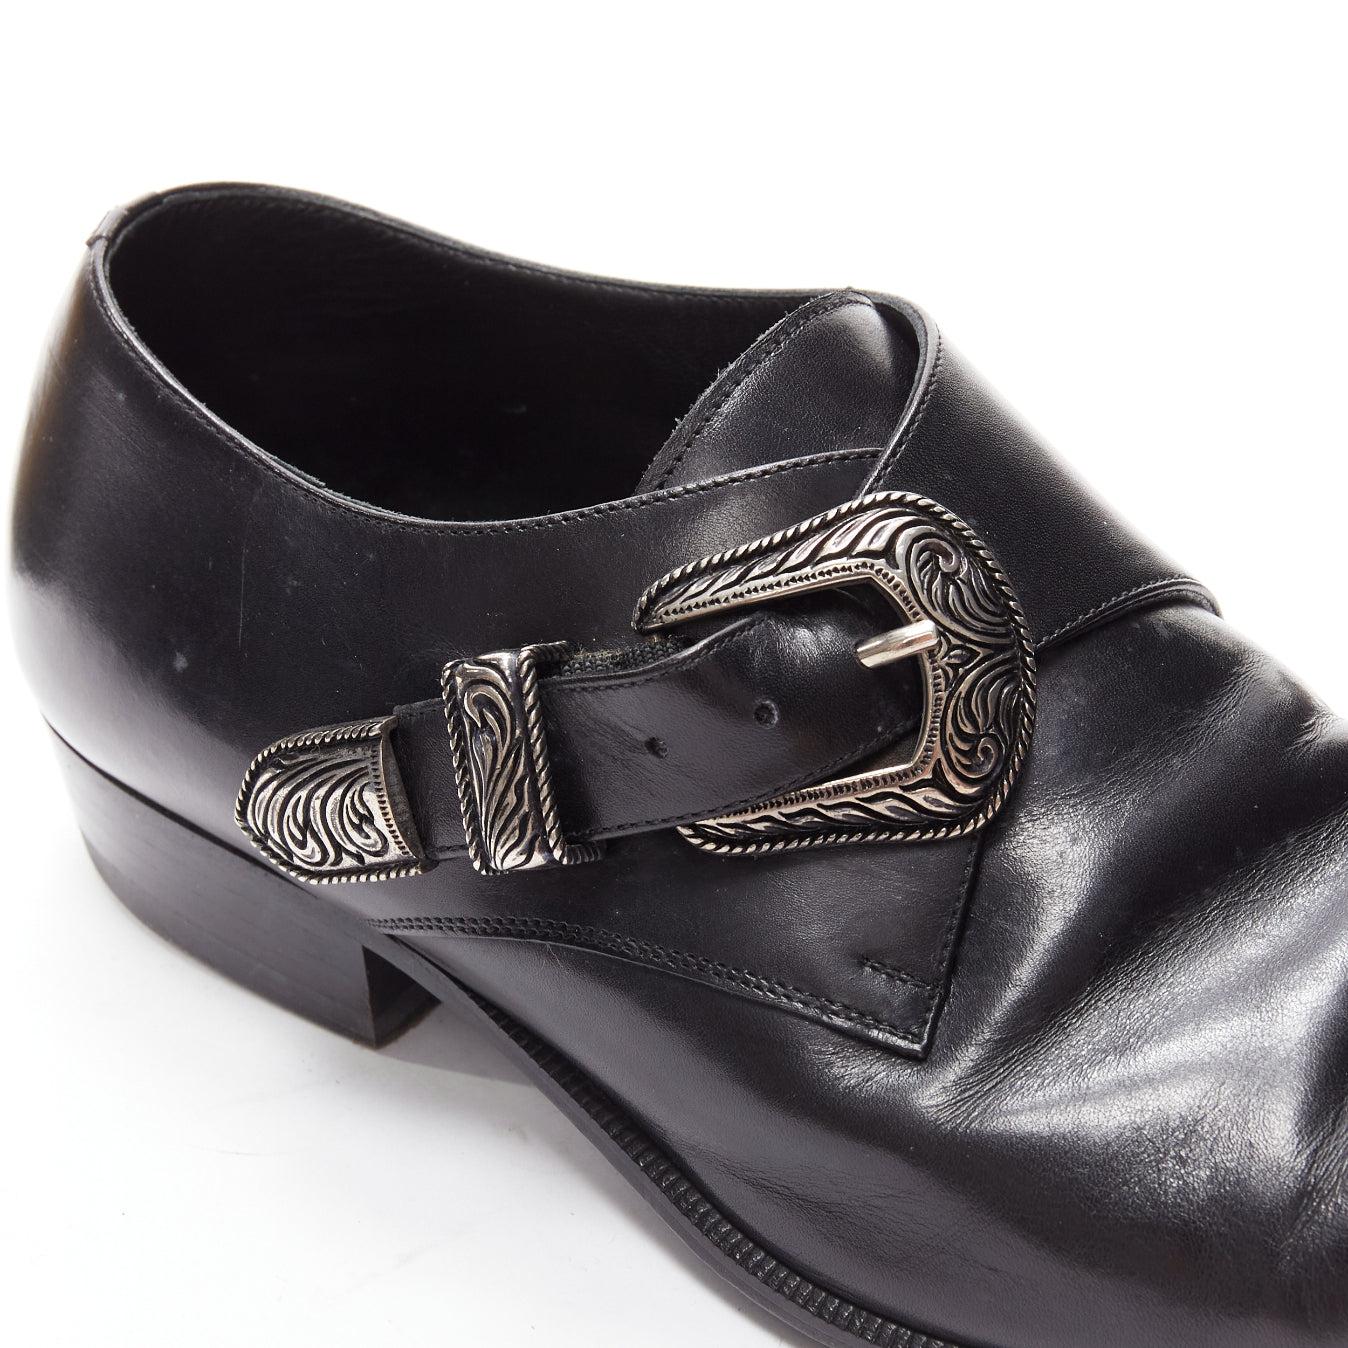 SAINT LAURENT Duckies 25 2014 black western buckle monkstrap shoes EU41 5